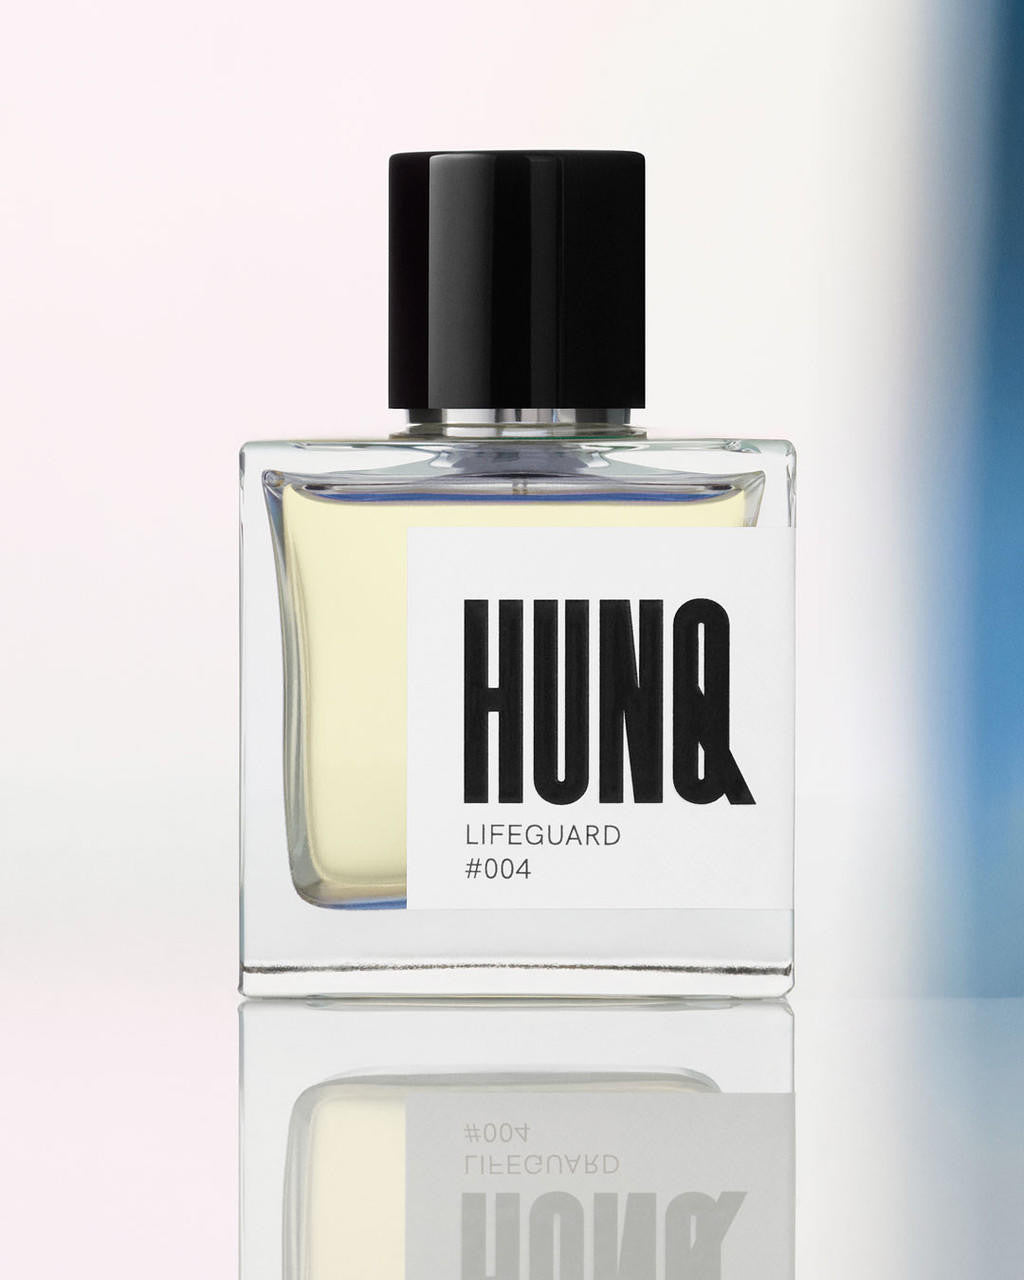  HUNQ #004 Lifeguard Eau de Parfum 